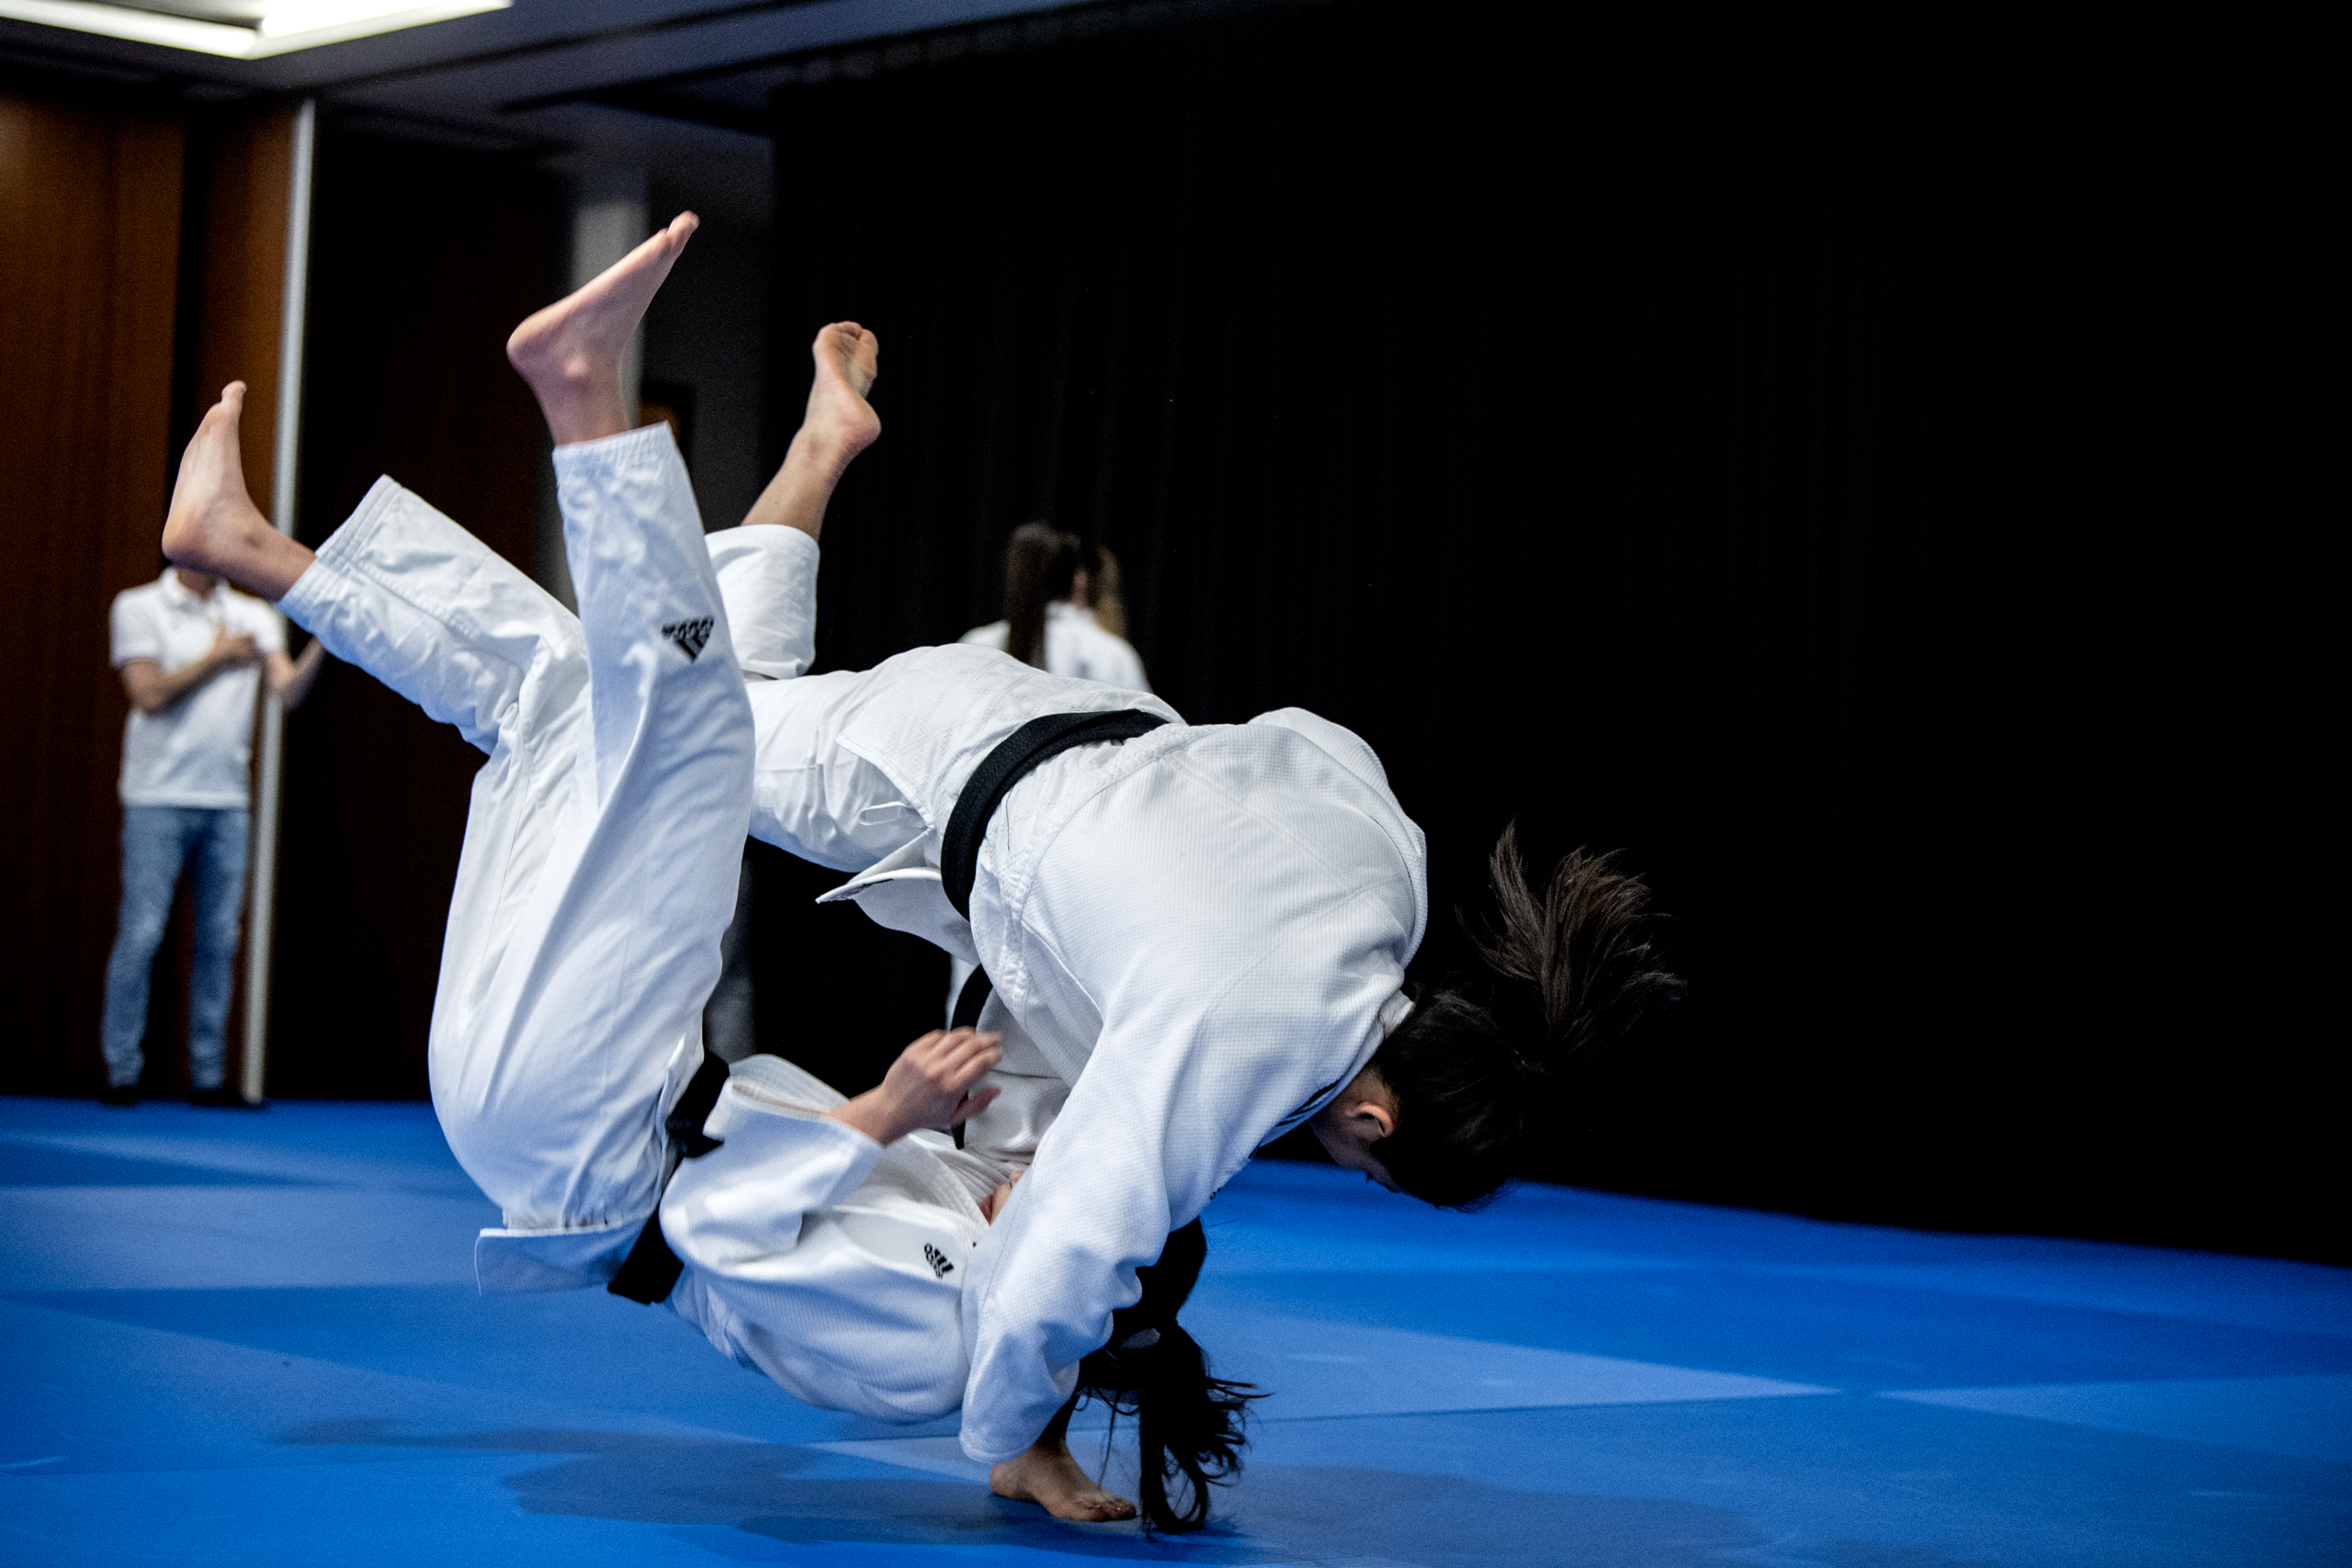 Un binôme de judokas ceintures noires en pleine chute sur un tatami bleu.